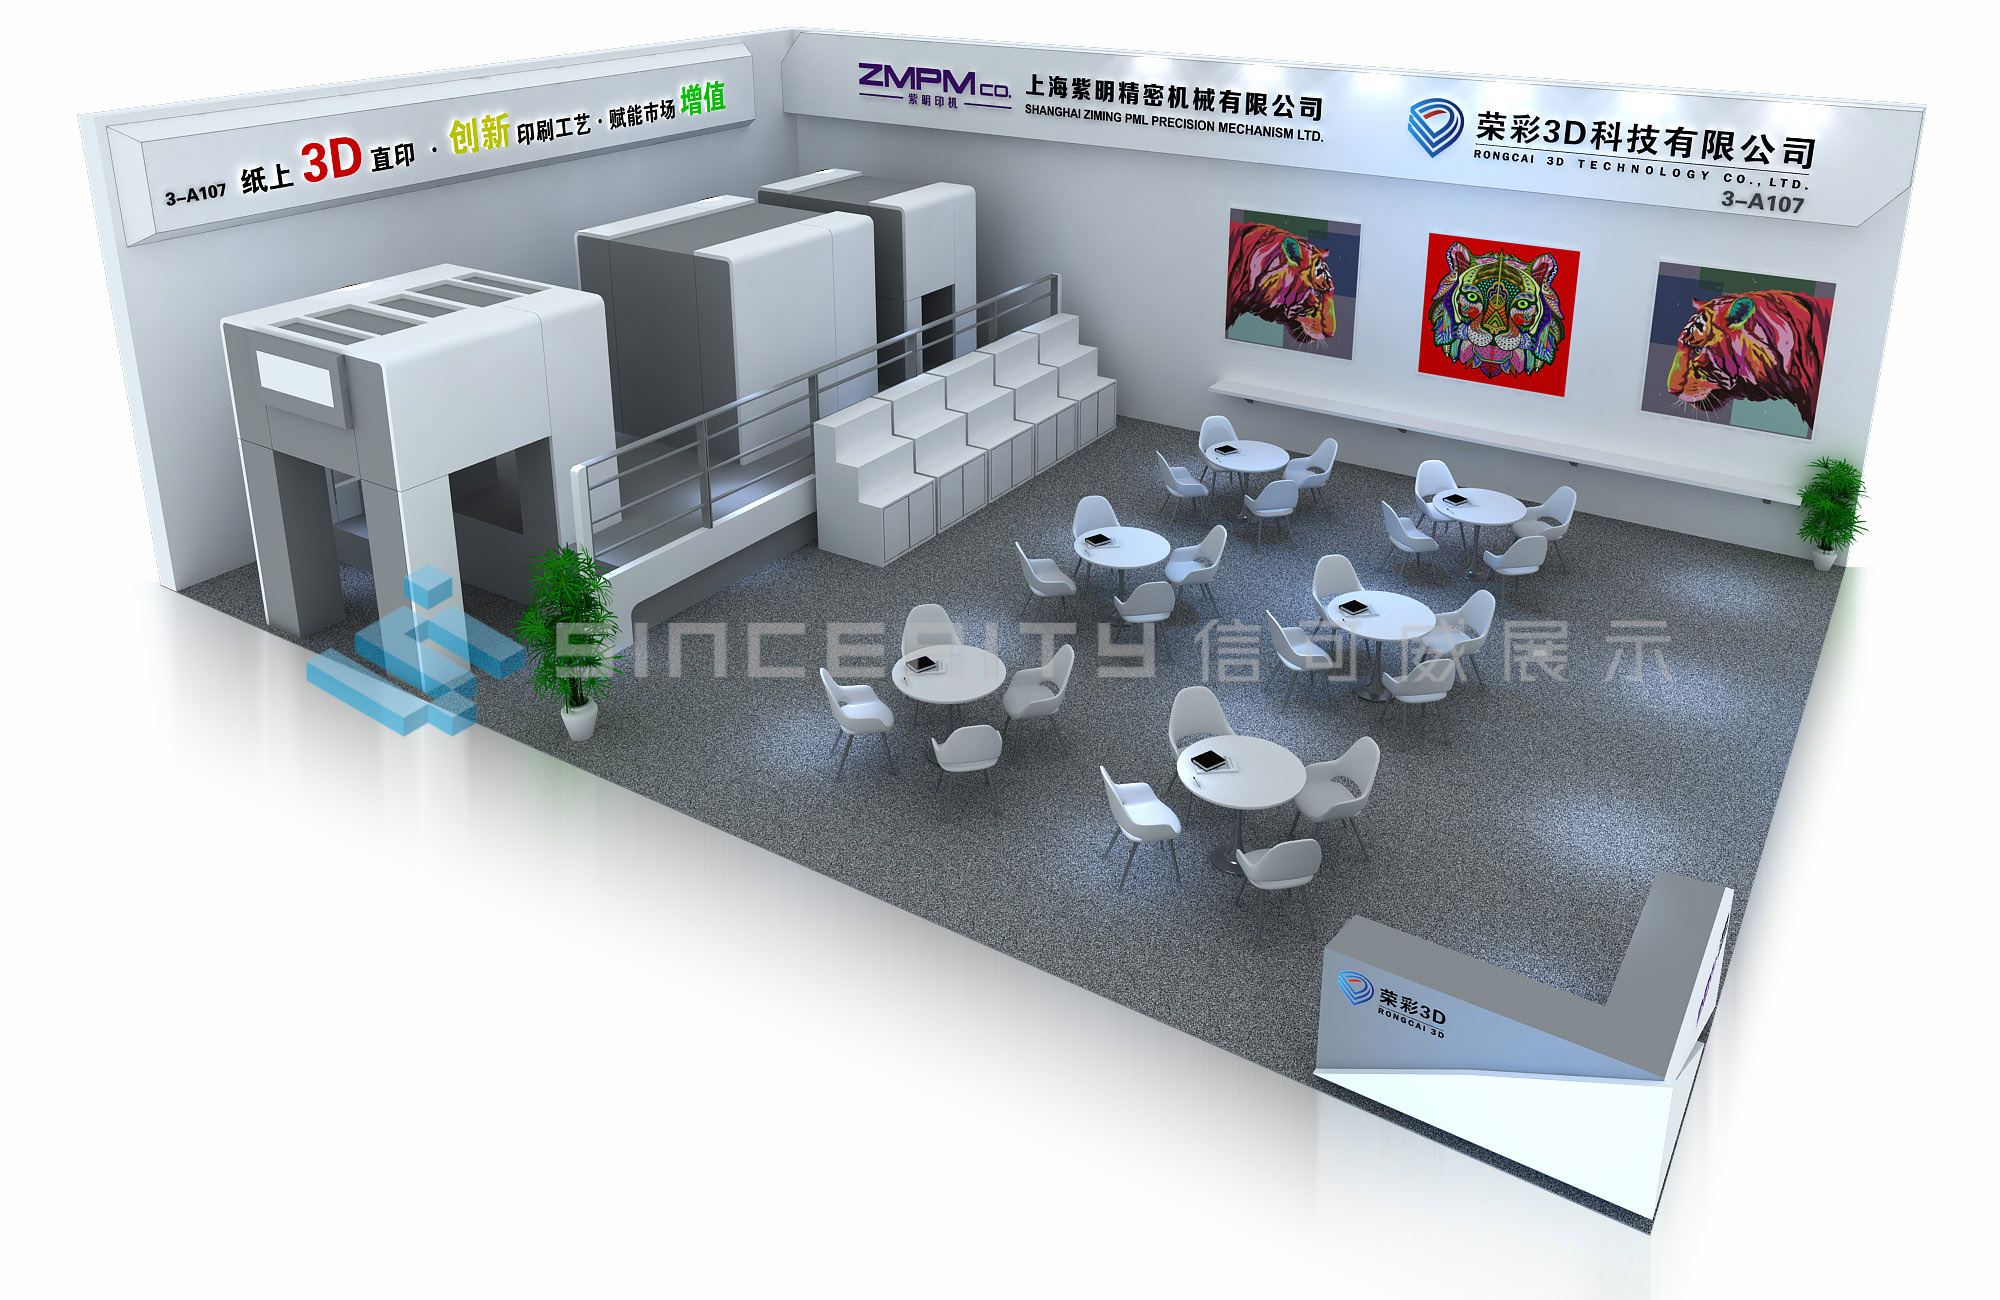 上海紫明精密机械与荣彩3D科技展台设计效果图